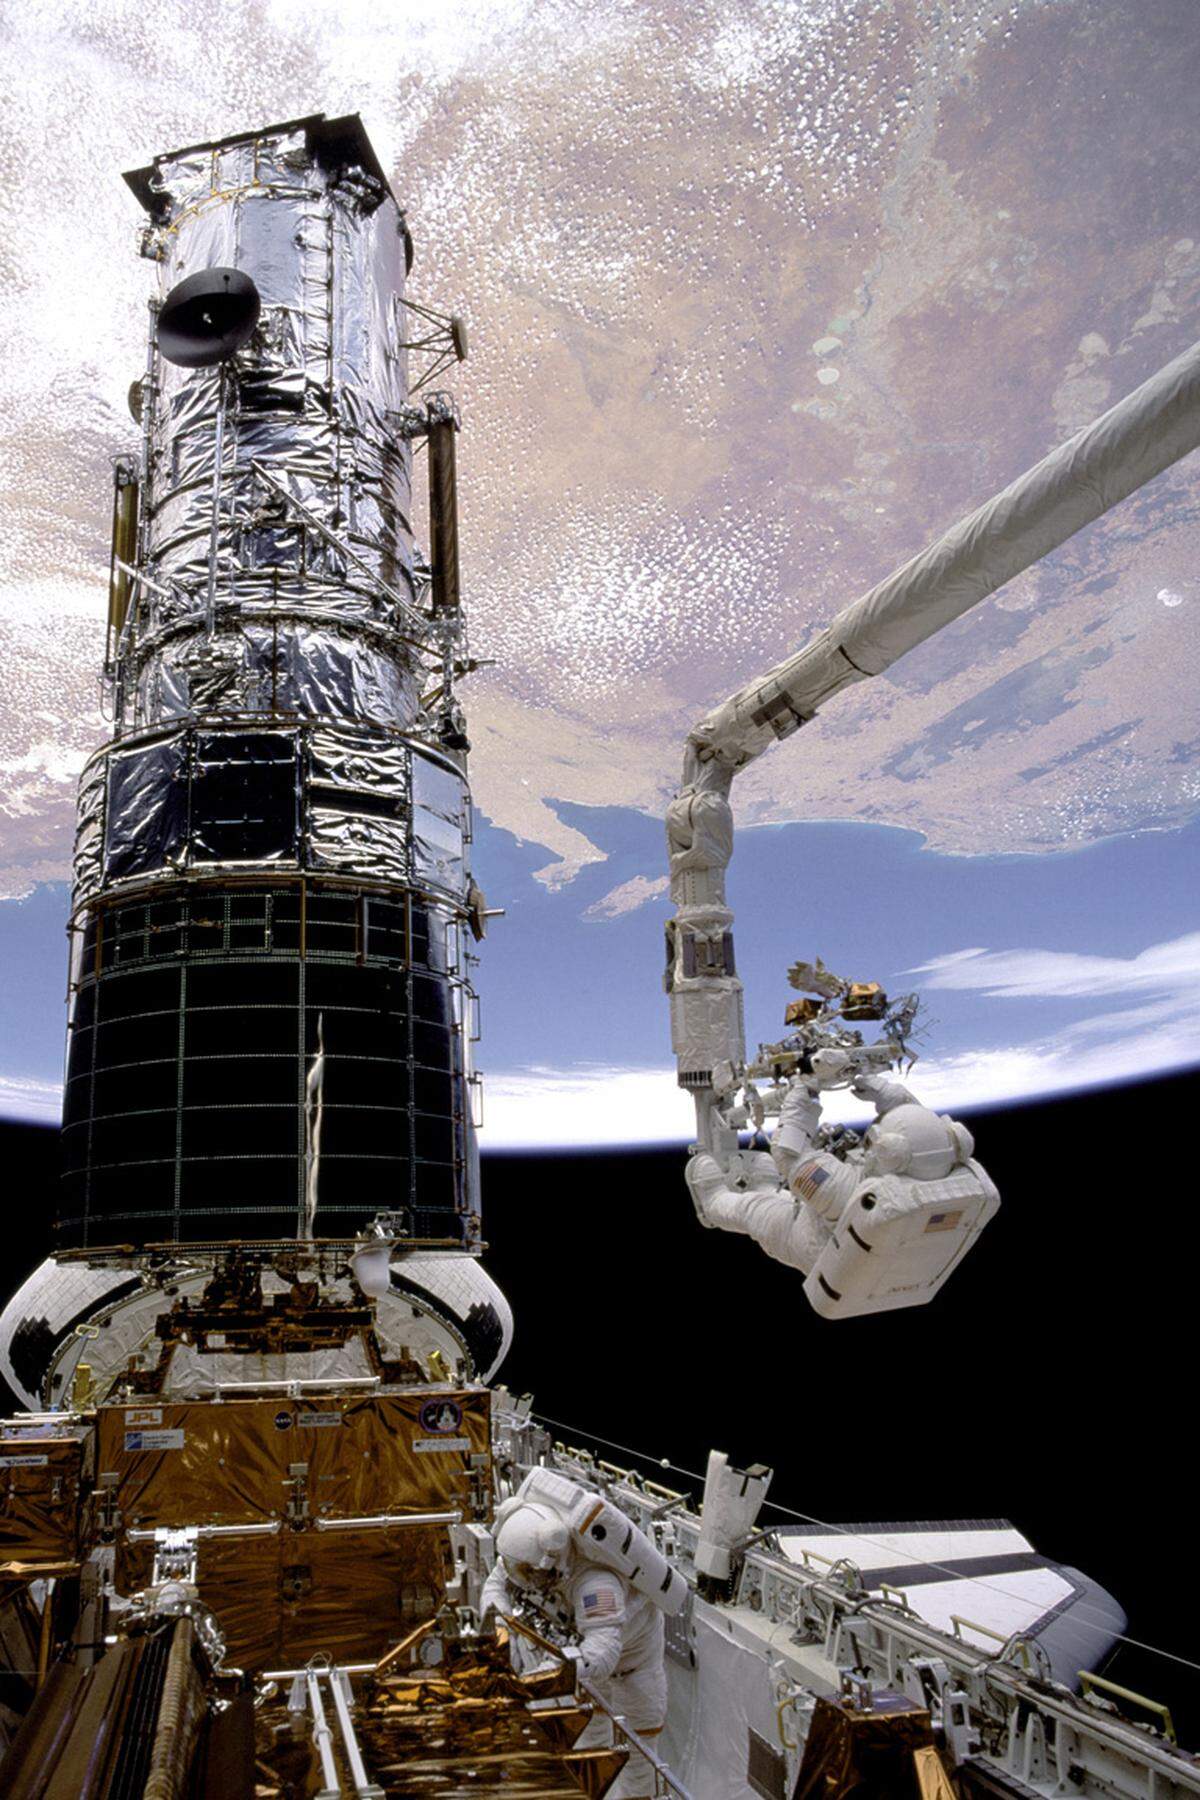 Ihr Jungfernflug im Mai 1992 war eine Rettungsmission, in der ein Nachrichtensatellit eingefangen und in die richtige Umlaufbahn gelenkt wurde. Ihr wichtigster Einsatz führte "Endeavour" aber 1993 zum Weltraumteleskop "Hubble", wo Astronauten in nervenzehrender Kleinarbeit dafür sorgten, dass es wieder scharfe Bilder liefern konnte.